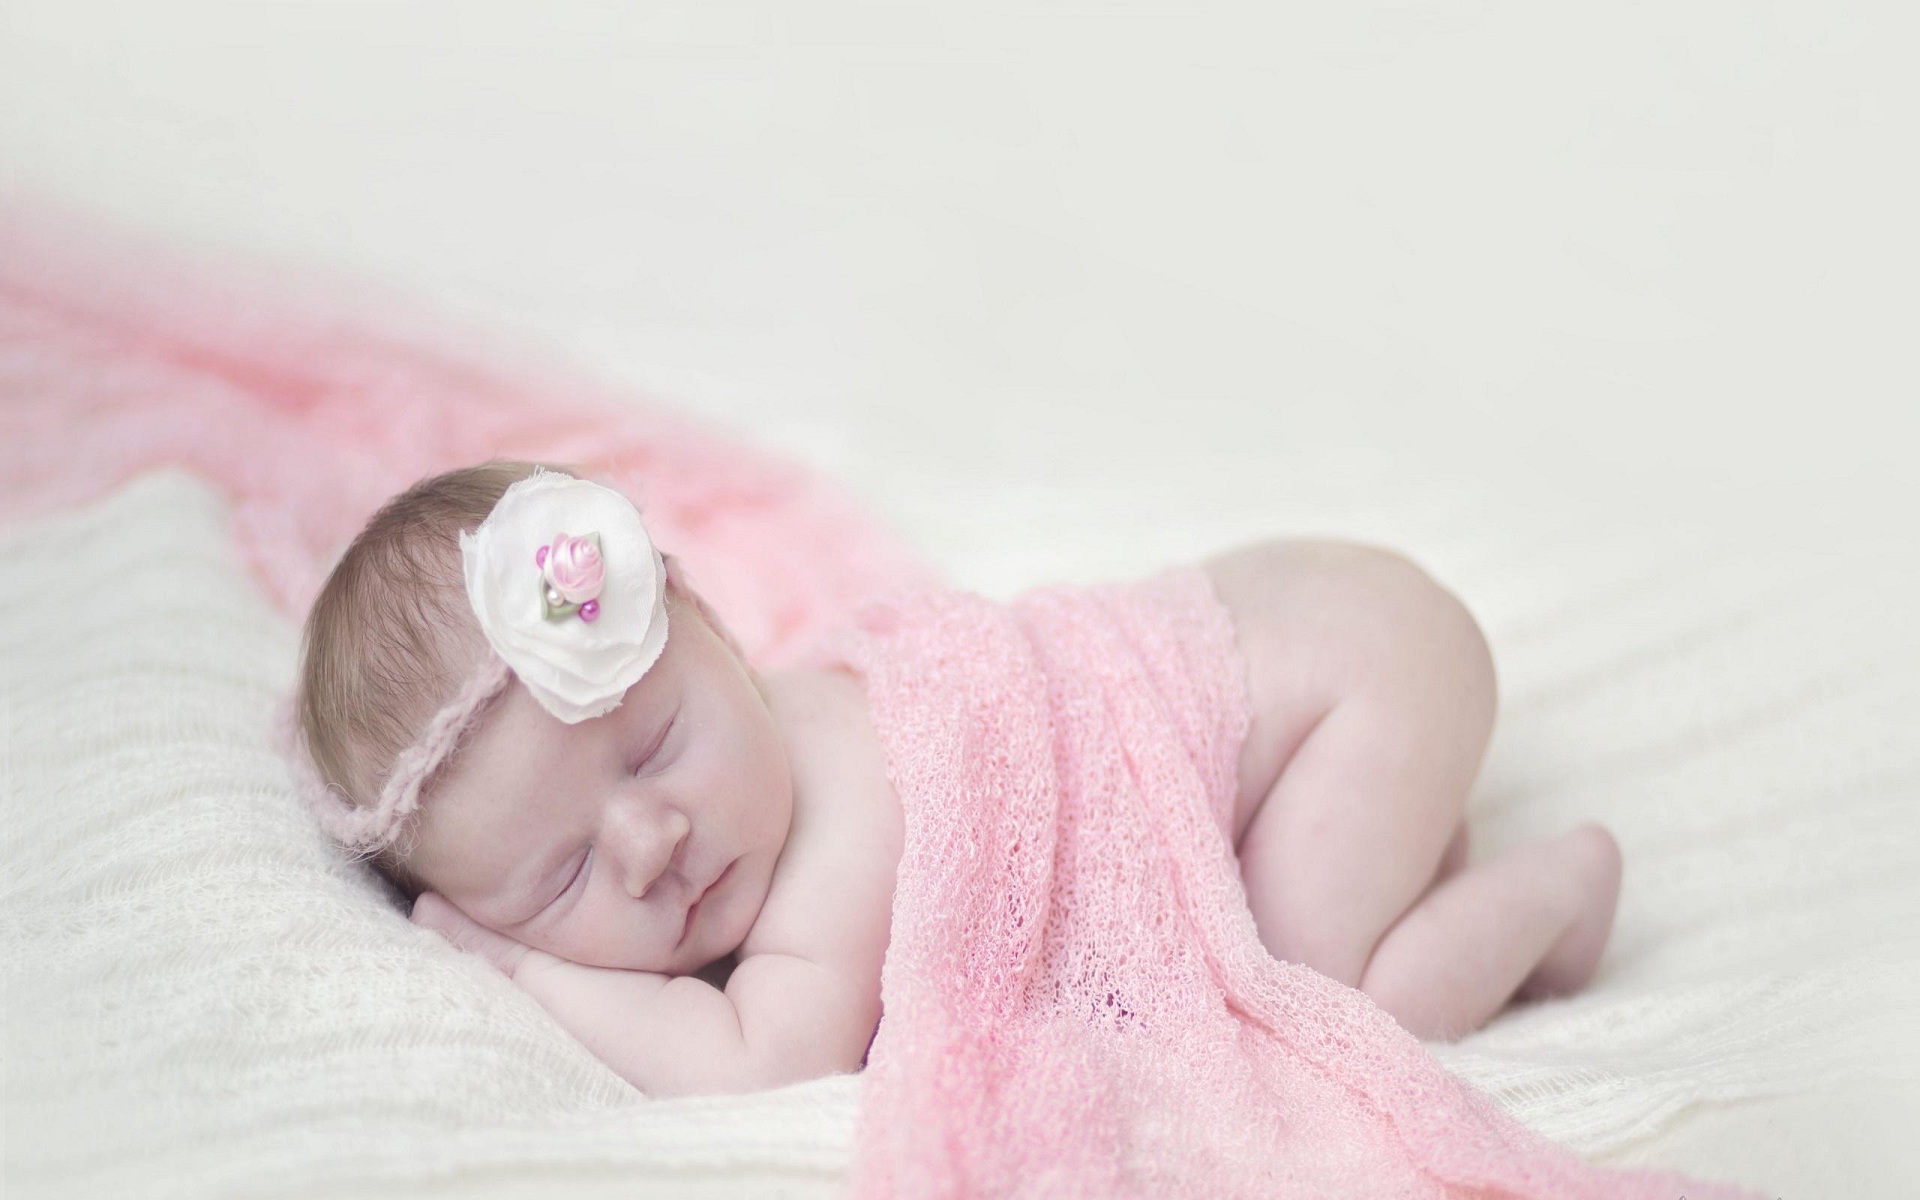 bebé durmiendo,niño,bebé,rosado,fotografía,belleza